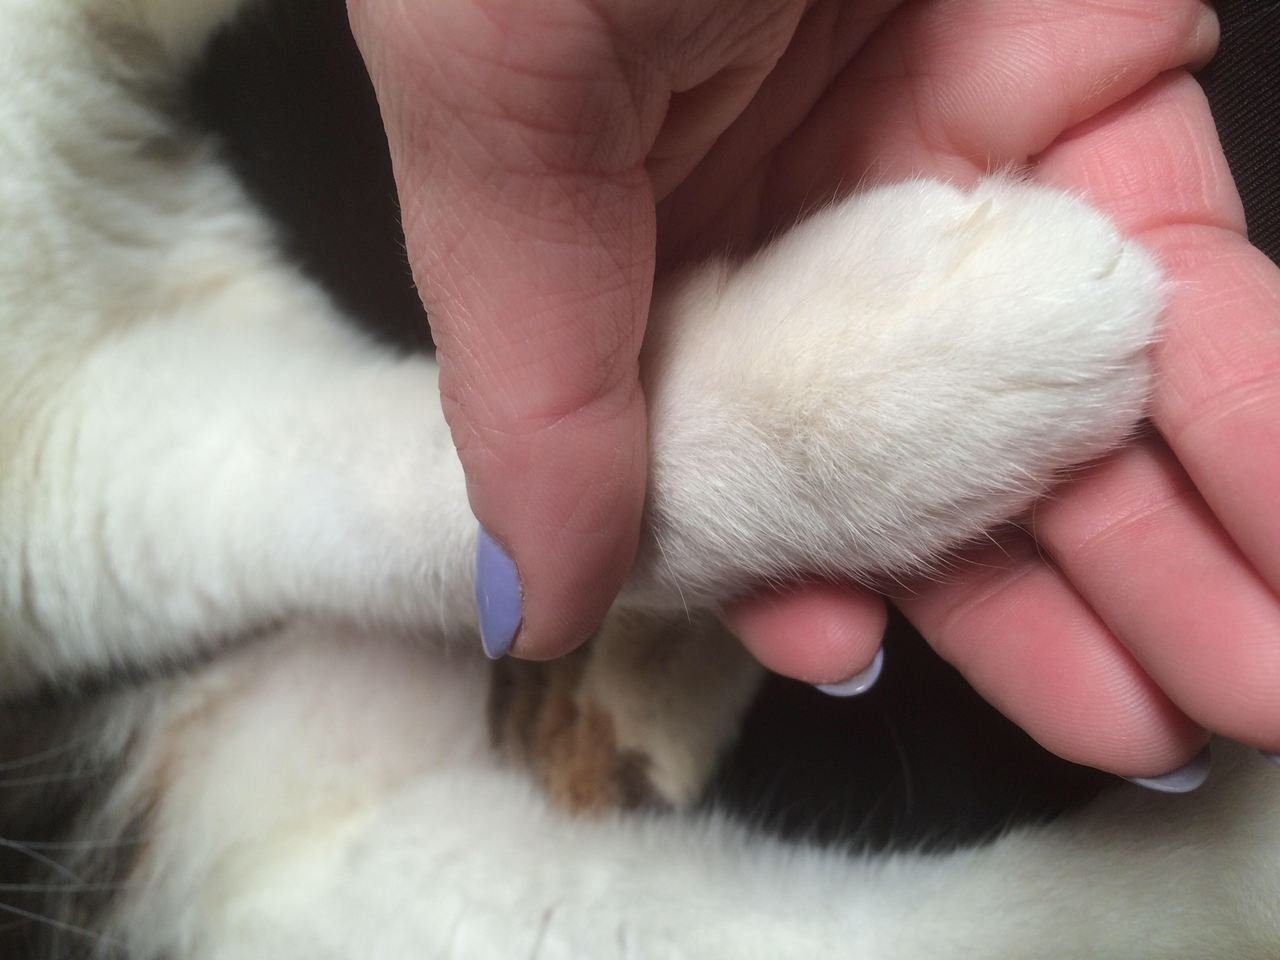 kedi tırnağı nasıl kesilir konusuna dair araştırma yaptıktan sonra kedisinin tırnaklarını kesmek için patisini tutan kadın